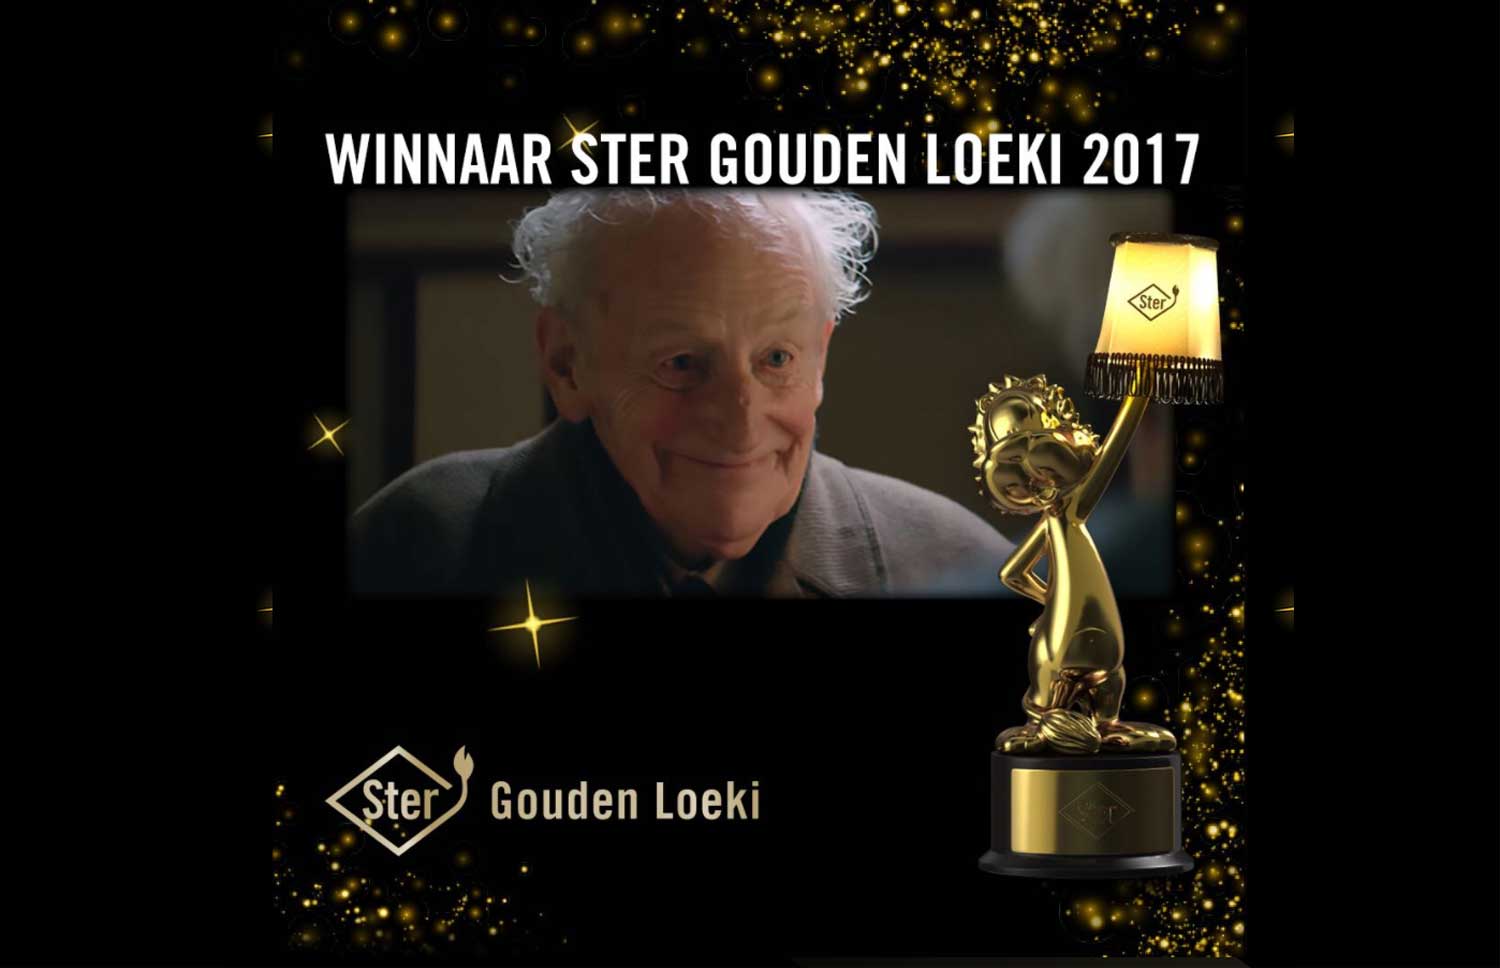 Appie Christmas! winnaar de Ster Gouden Loeki 2017